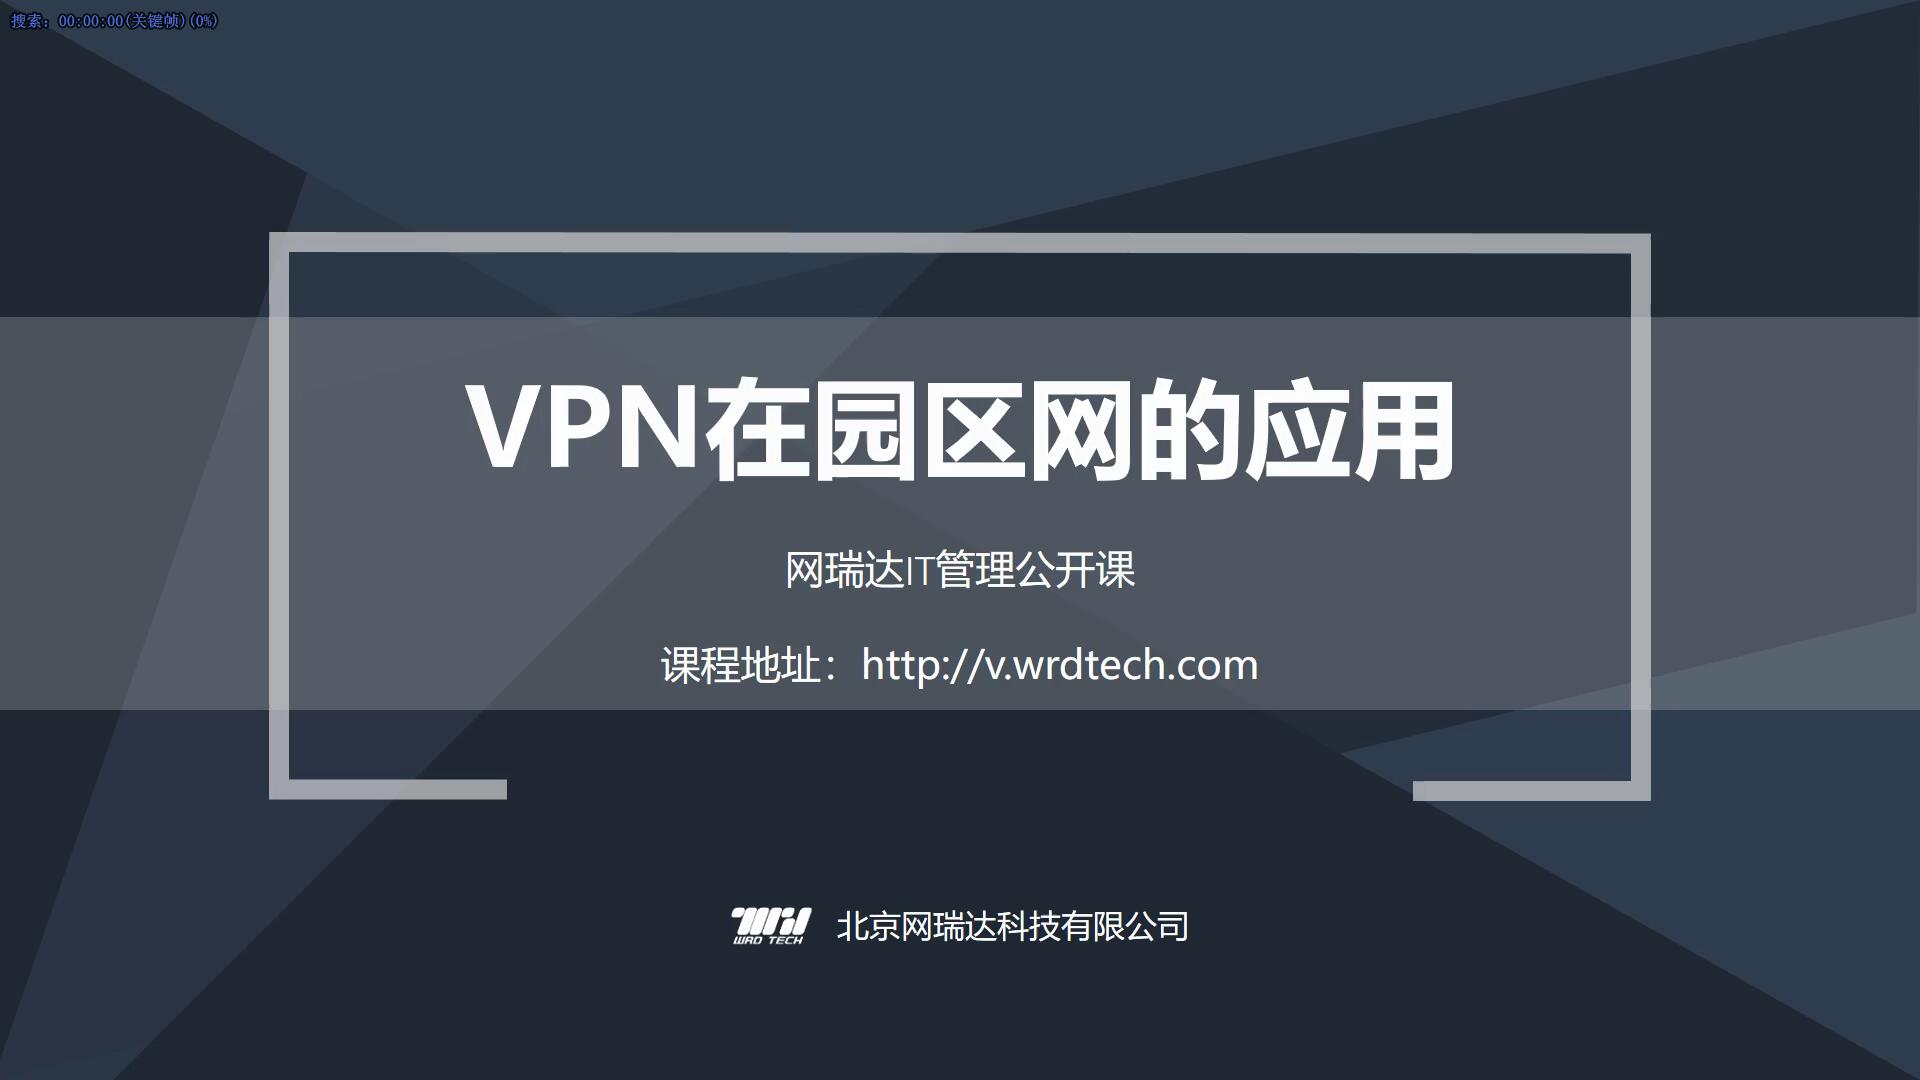 043-硬件-VPN设备在园区网的应用